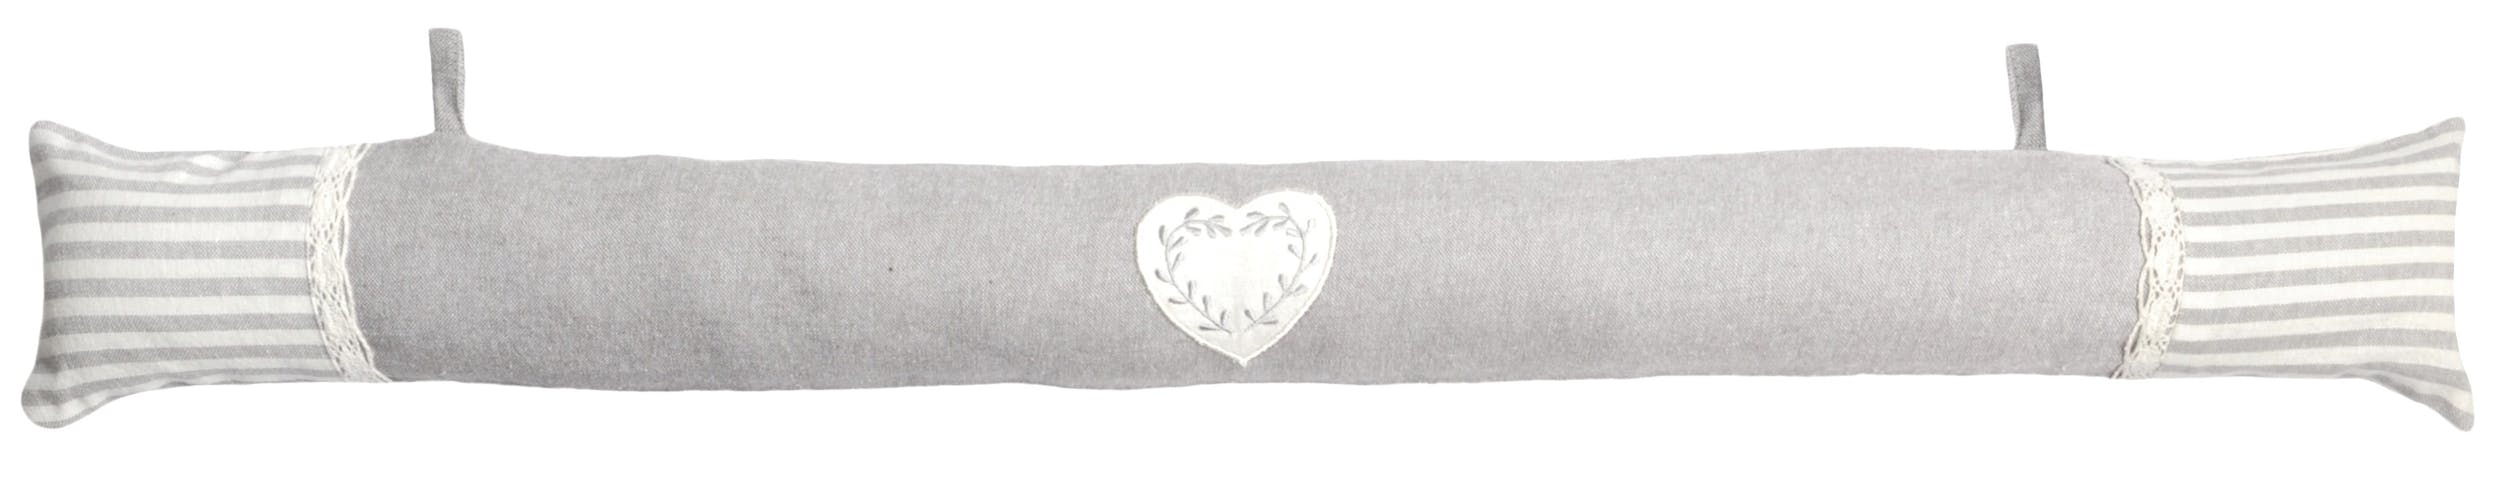 Coussin bas de porte romantique écru et gris décor coeur brodé 90x10cm 100% coton CHINON